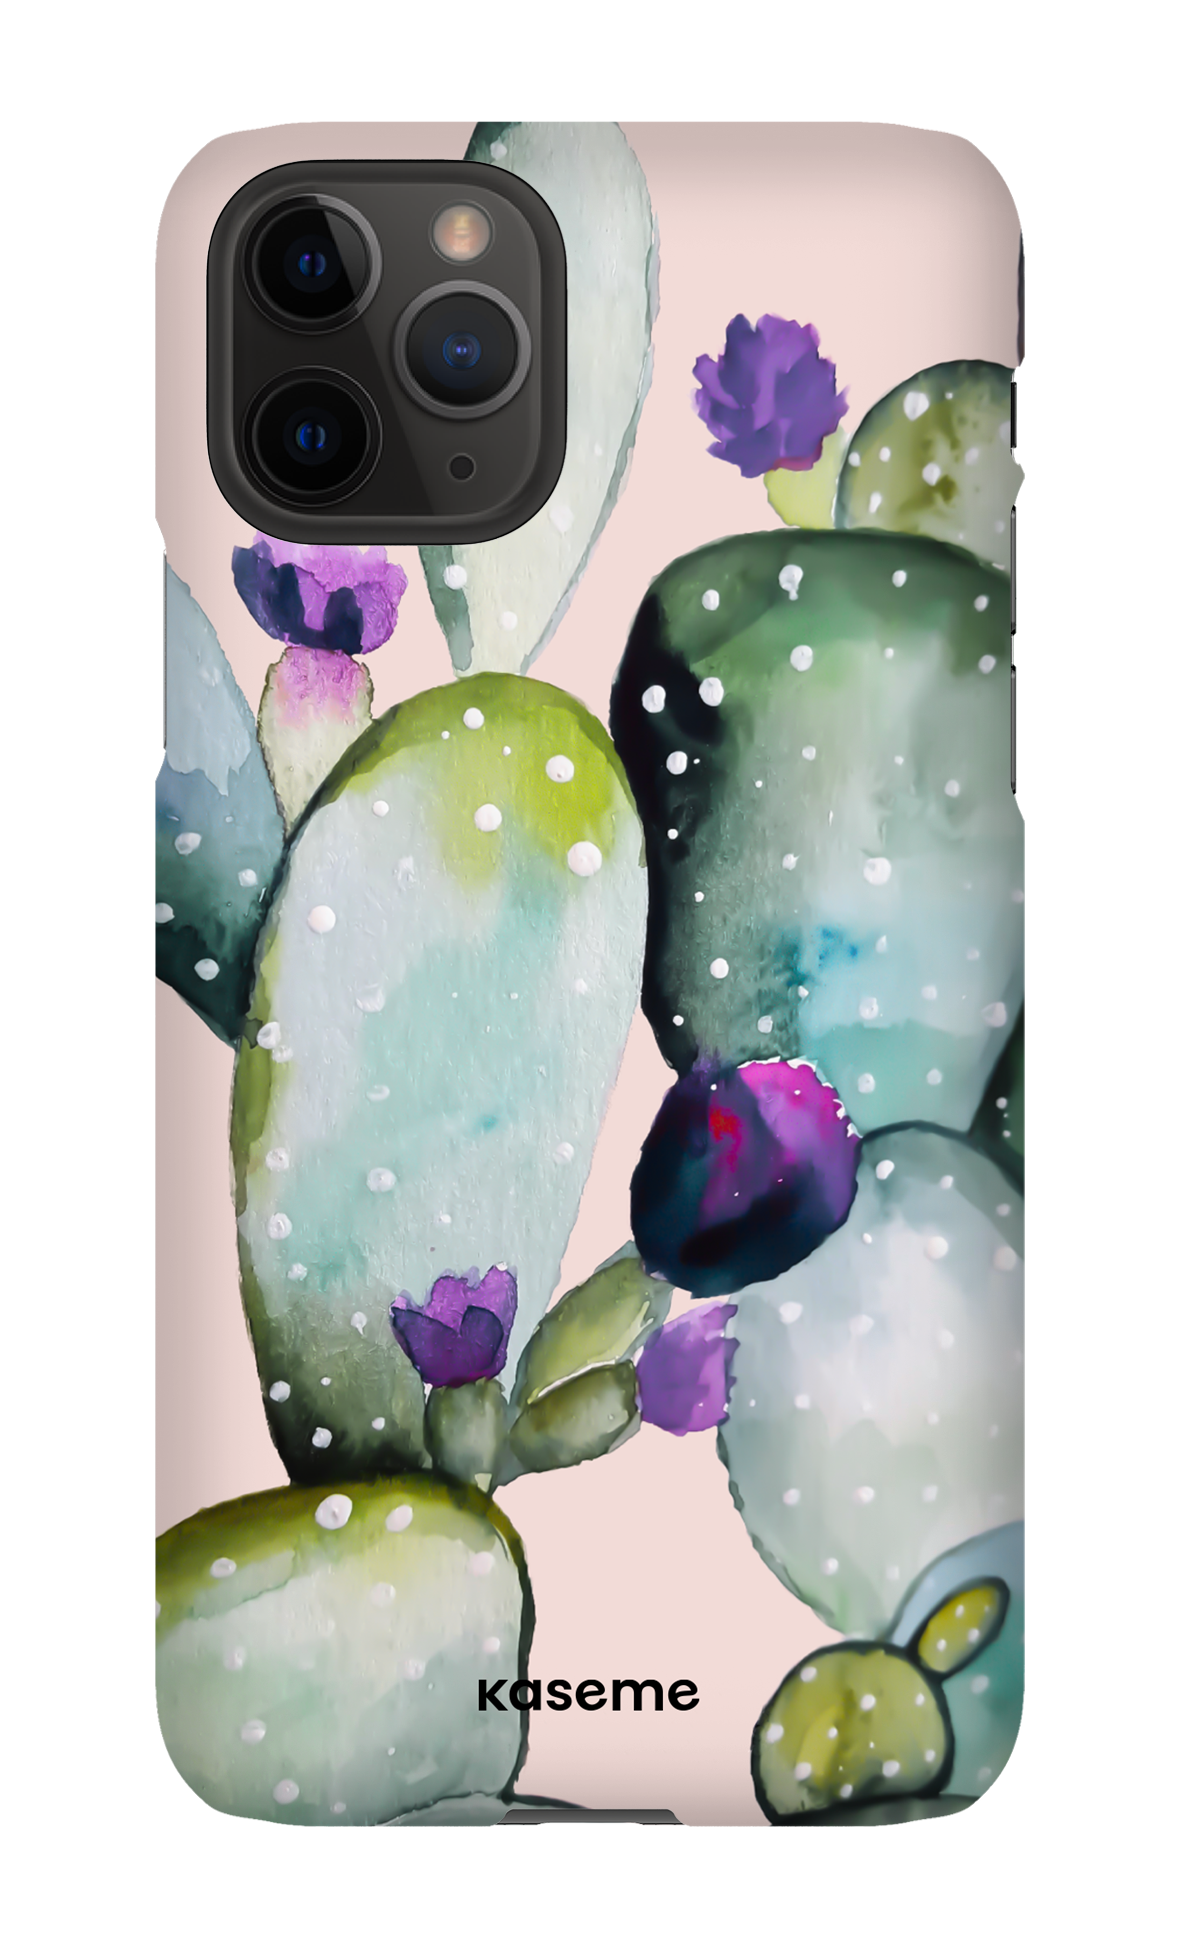 Cactus Flower - iPhone 11 Pro